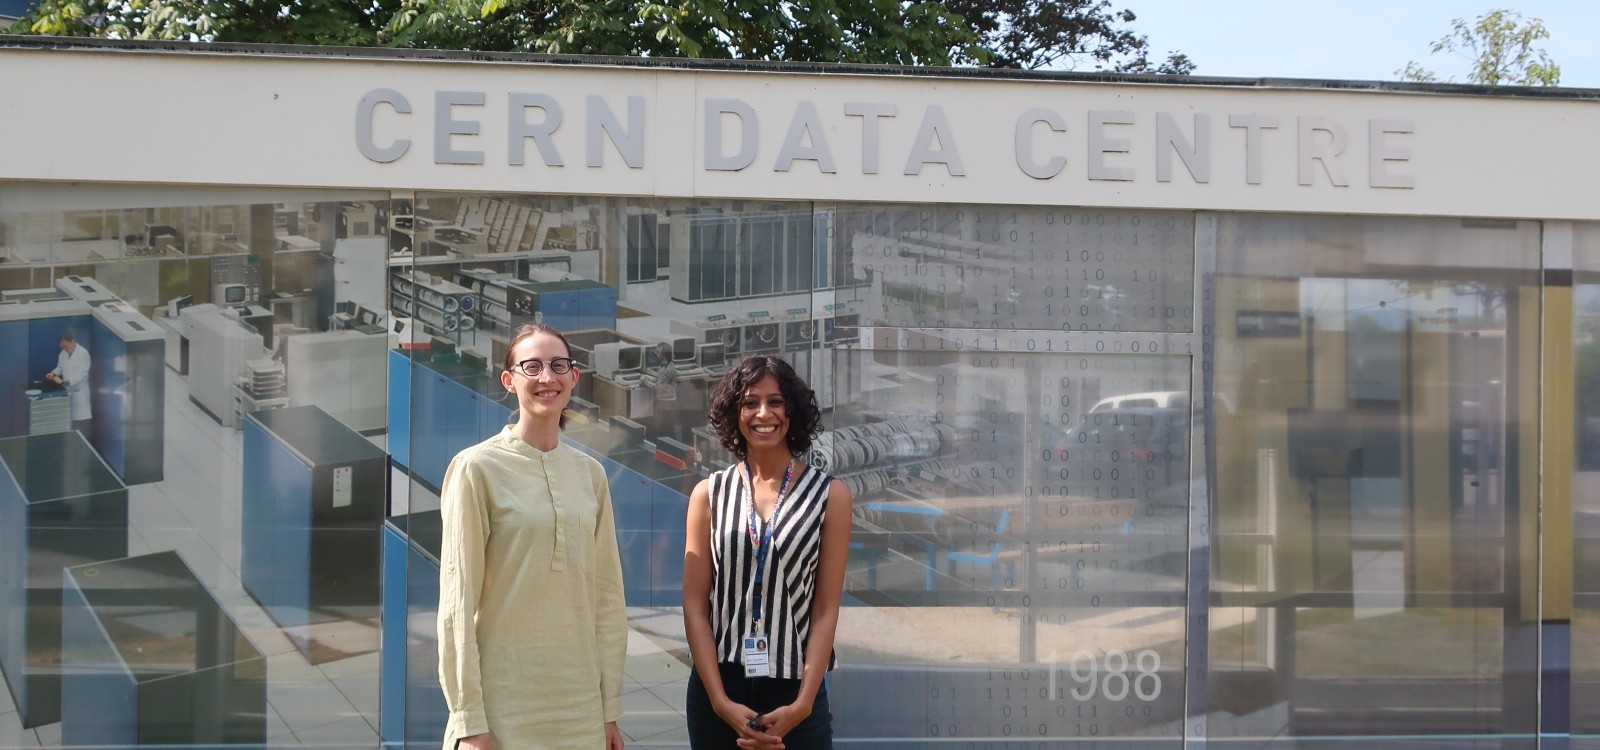 Elisa Storelli and Rohini Devasher at the CERN Data Centre